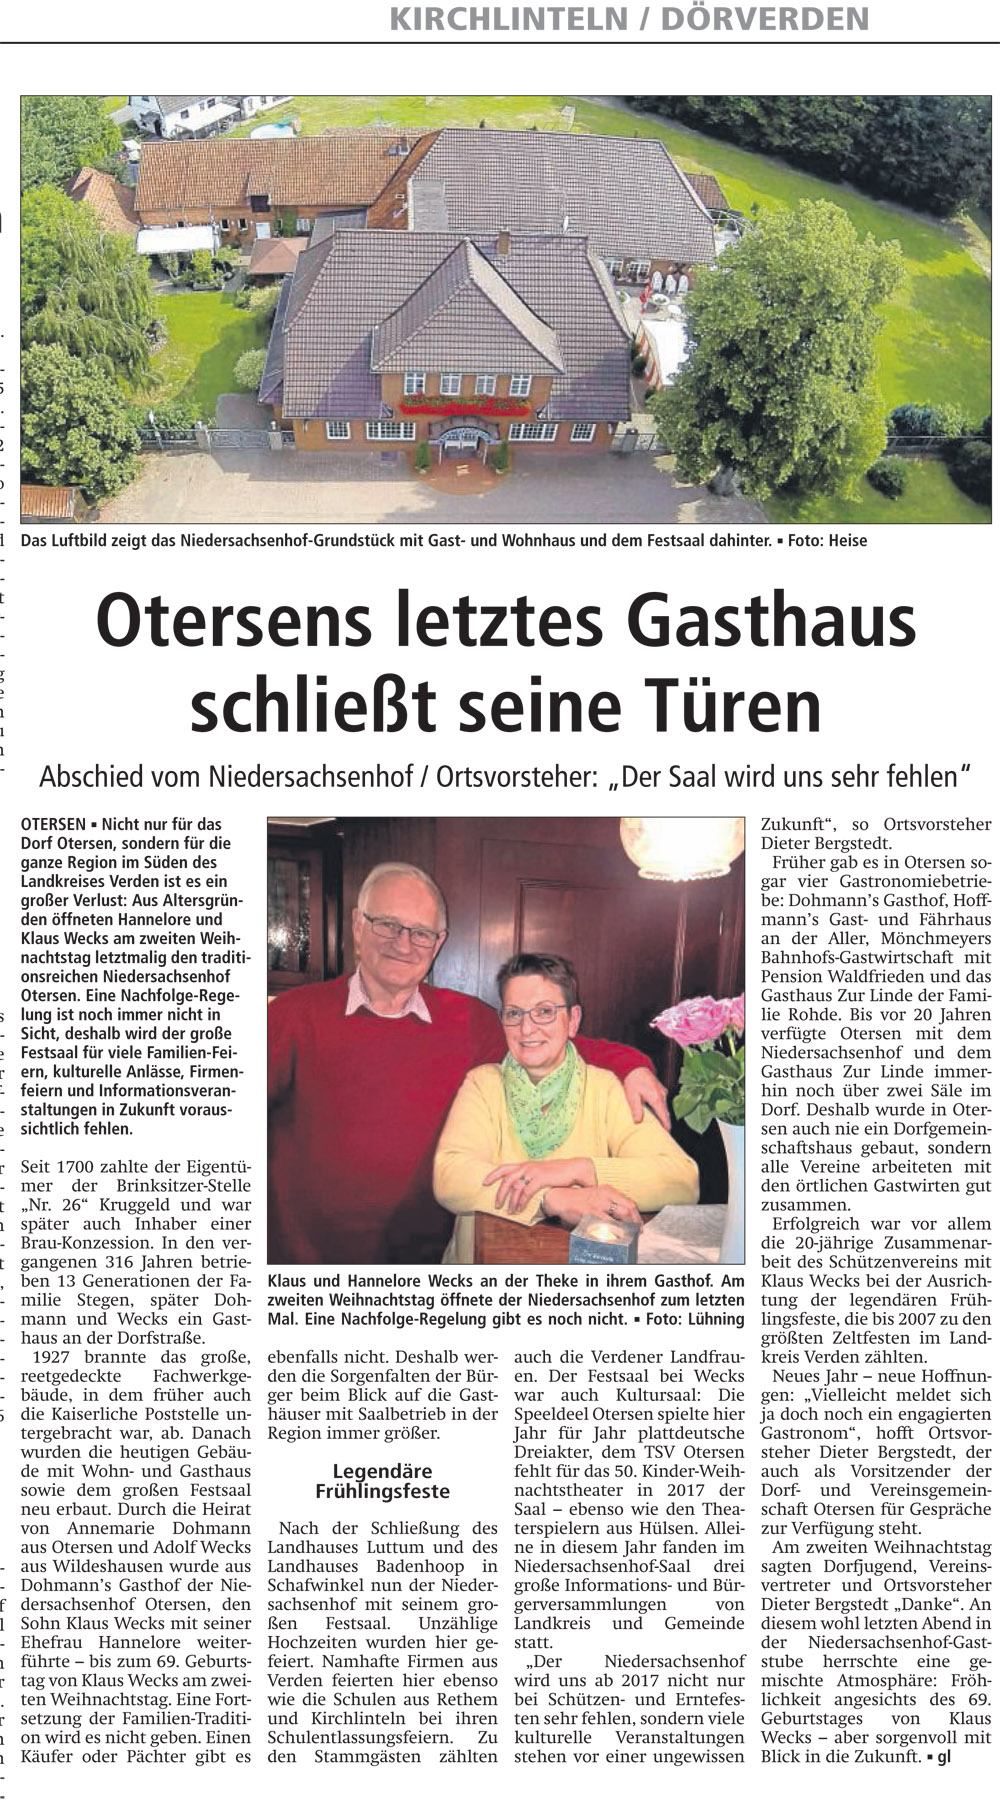 Am 28.12.2016 berichtete die Verdener-Aller-Zeitung ausführlich über die Niedersachsenhof-Schließung